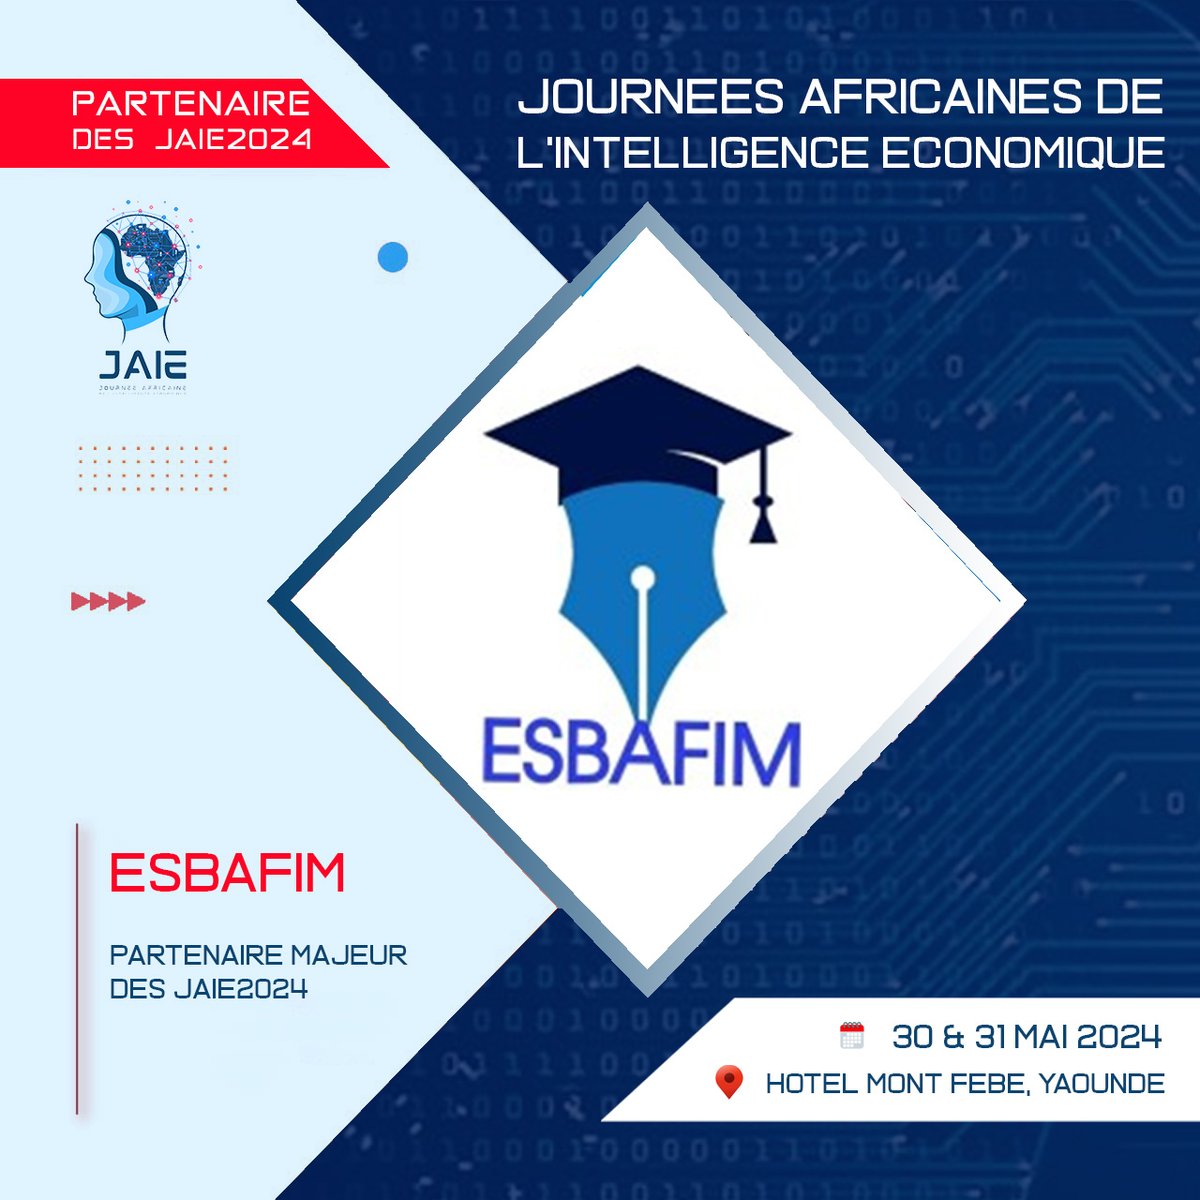 La 7ème édition des Journées africaines de l’intelligence économique #JAIE2024 du 30 au 31 mai 2024, à Yaoundé, se réjouit du partenariat de #ESBAFIM pour sa bonne tenue. 

Plus d'informations : les-jaie.info

#IntelligenceEconomique #Influence #IntelligenceTerroriale